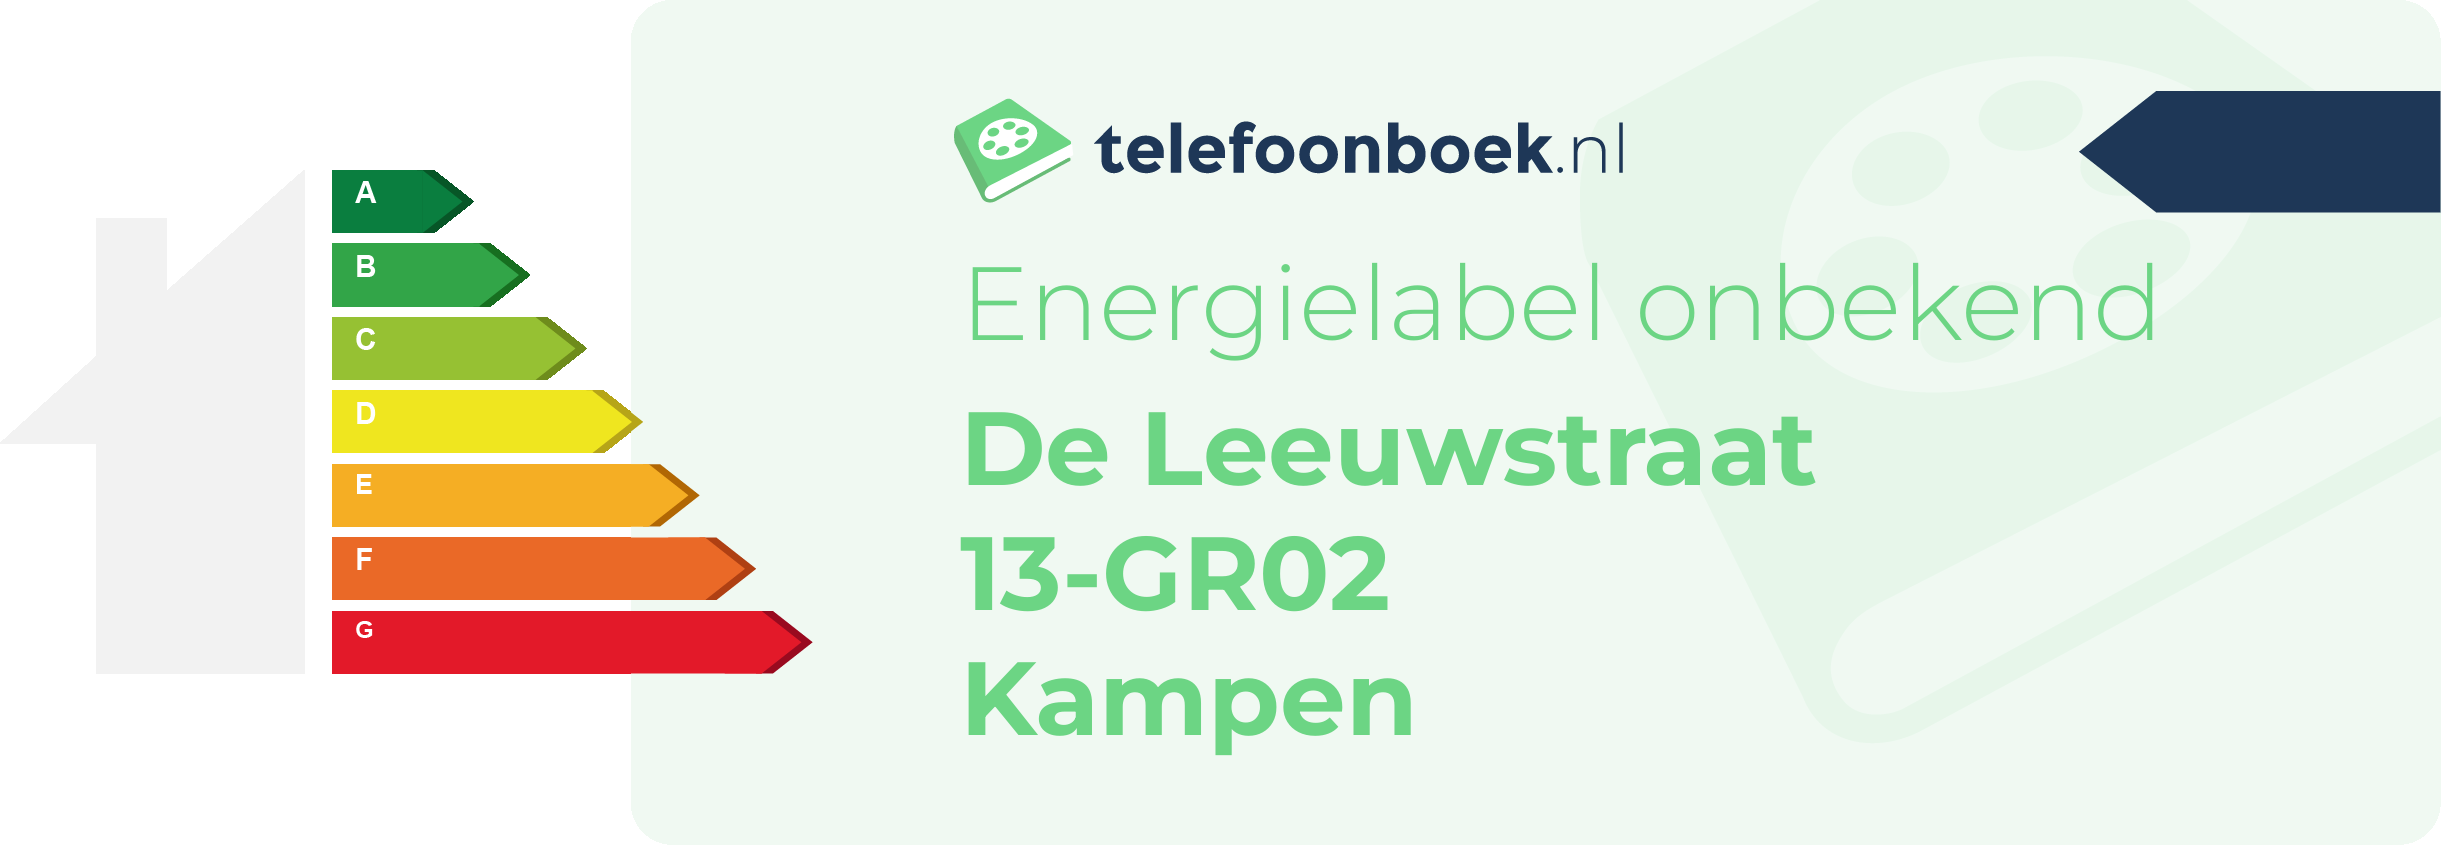 Energielabel De Leeuwstraat 13-GR02 Kampen